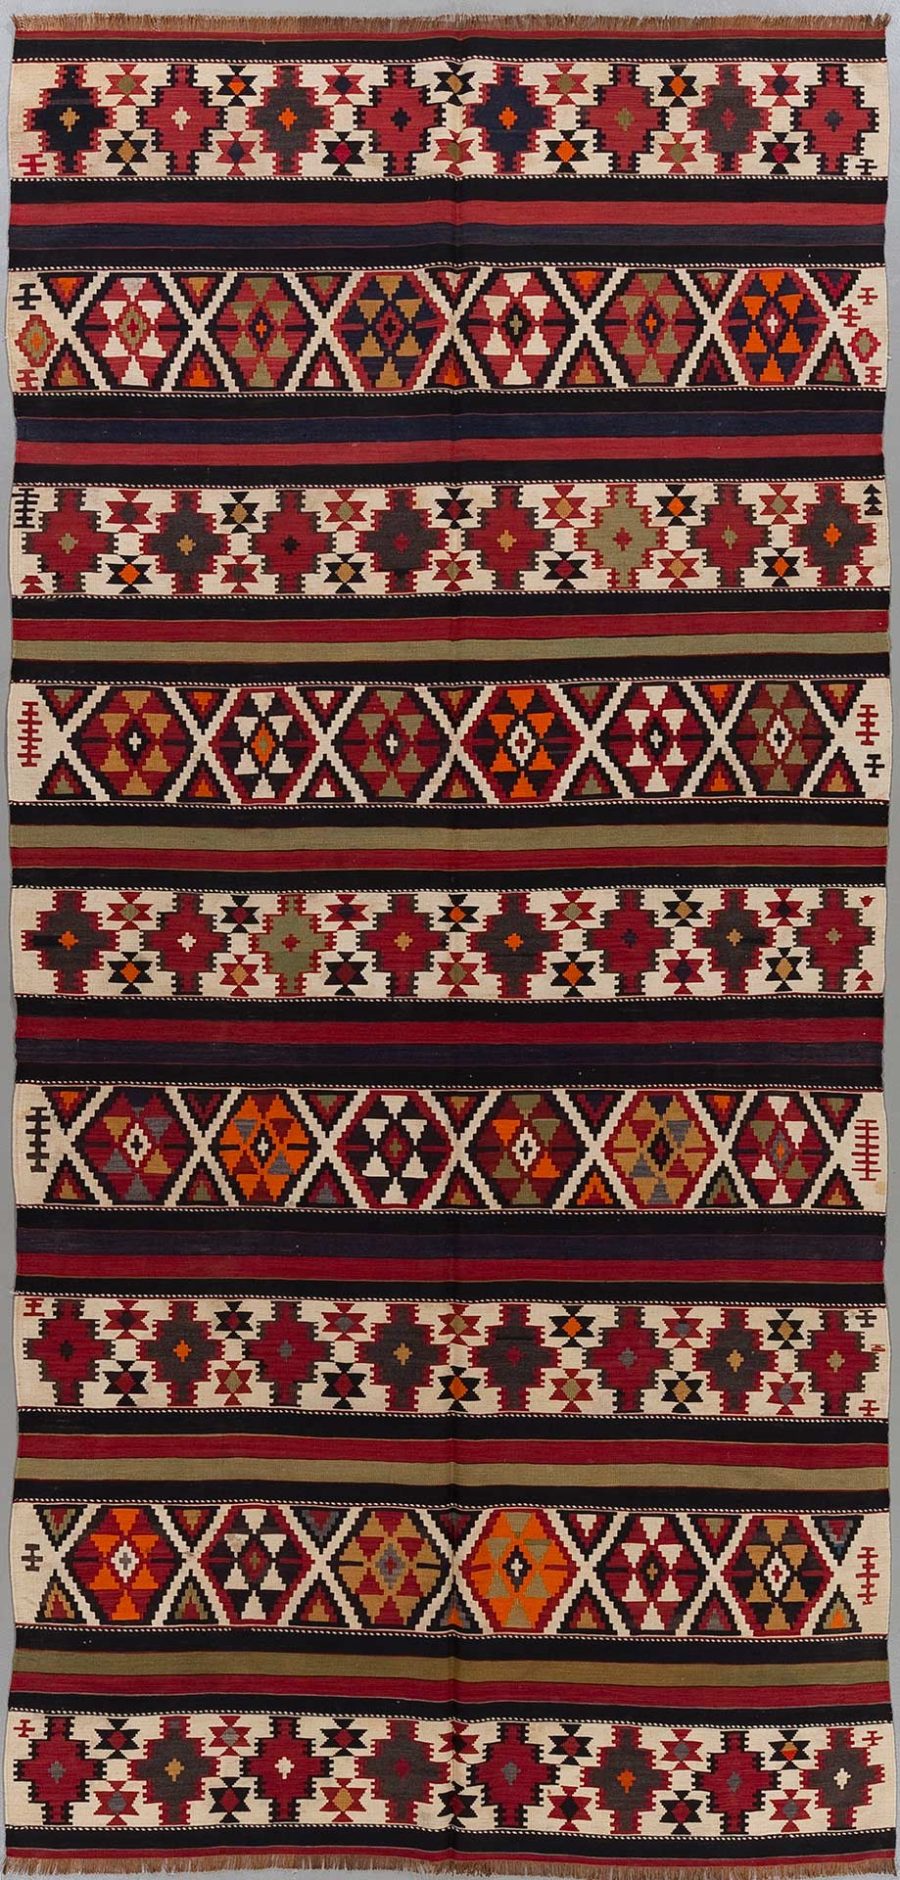 Traditioneller handgewebter Teppich mit komplexen geometrischen Mustern in überwiegend roten, schwarzen, weißen und orangefarbenen Tönen.